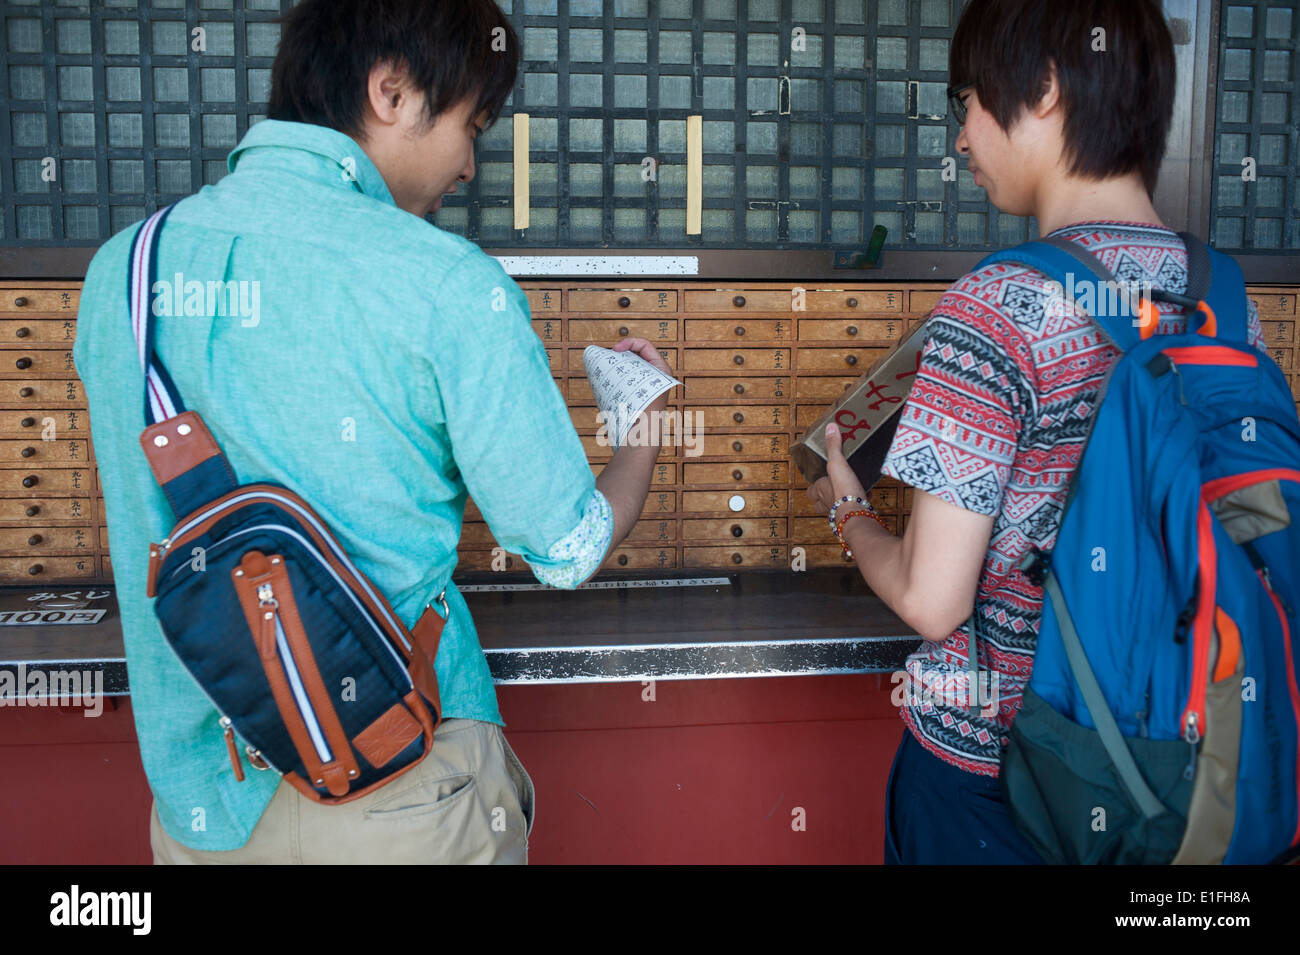 Tokyo Japan - Asakusa People take horoscope out of wooden drawer at Sanja Matsuri, Asakusa, Tokyo, Japan Stock Photo